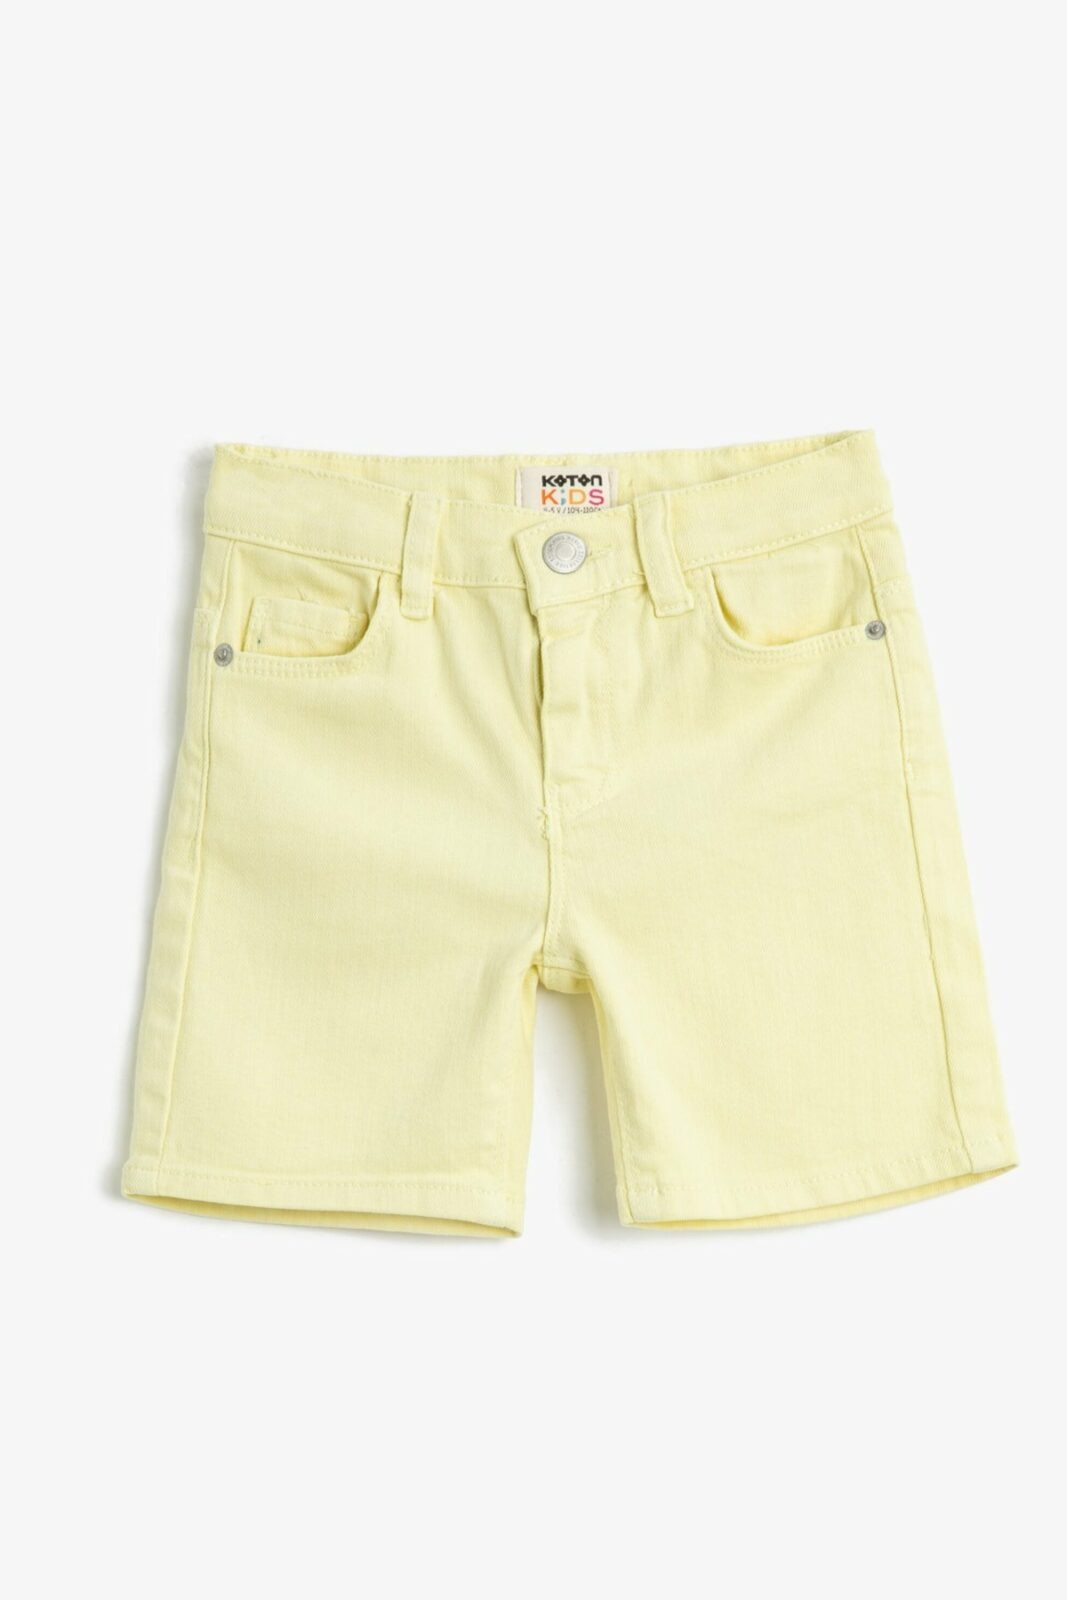 Koton Shorts -